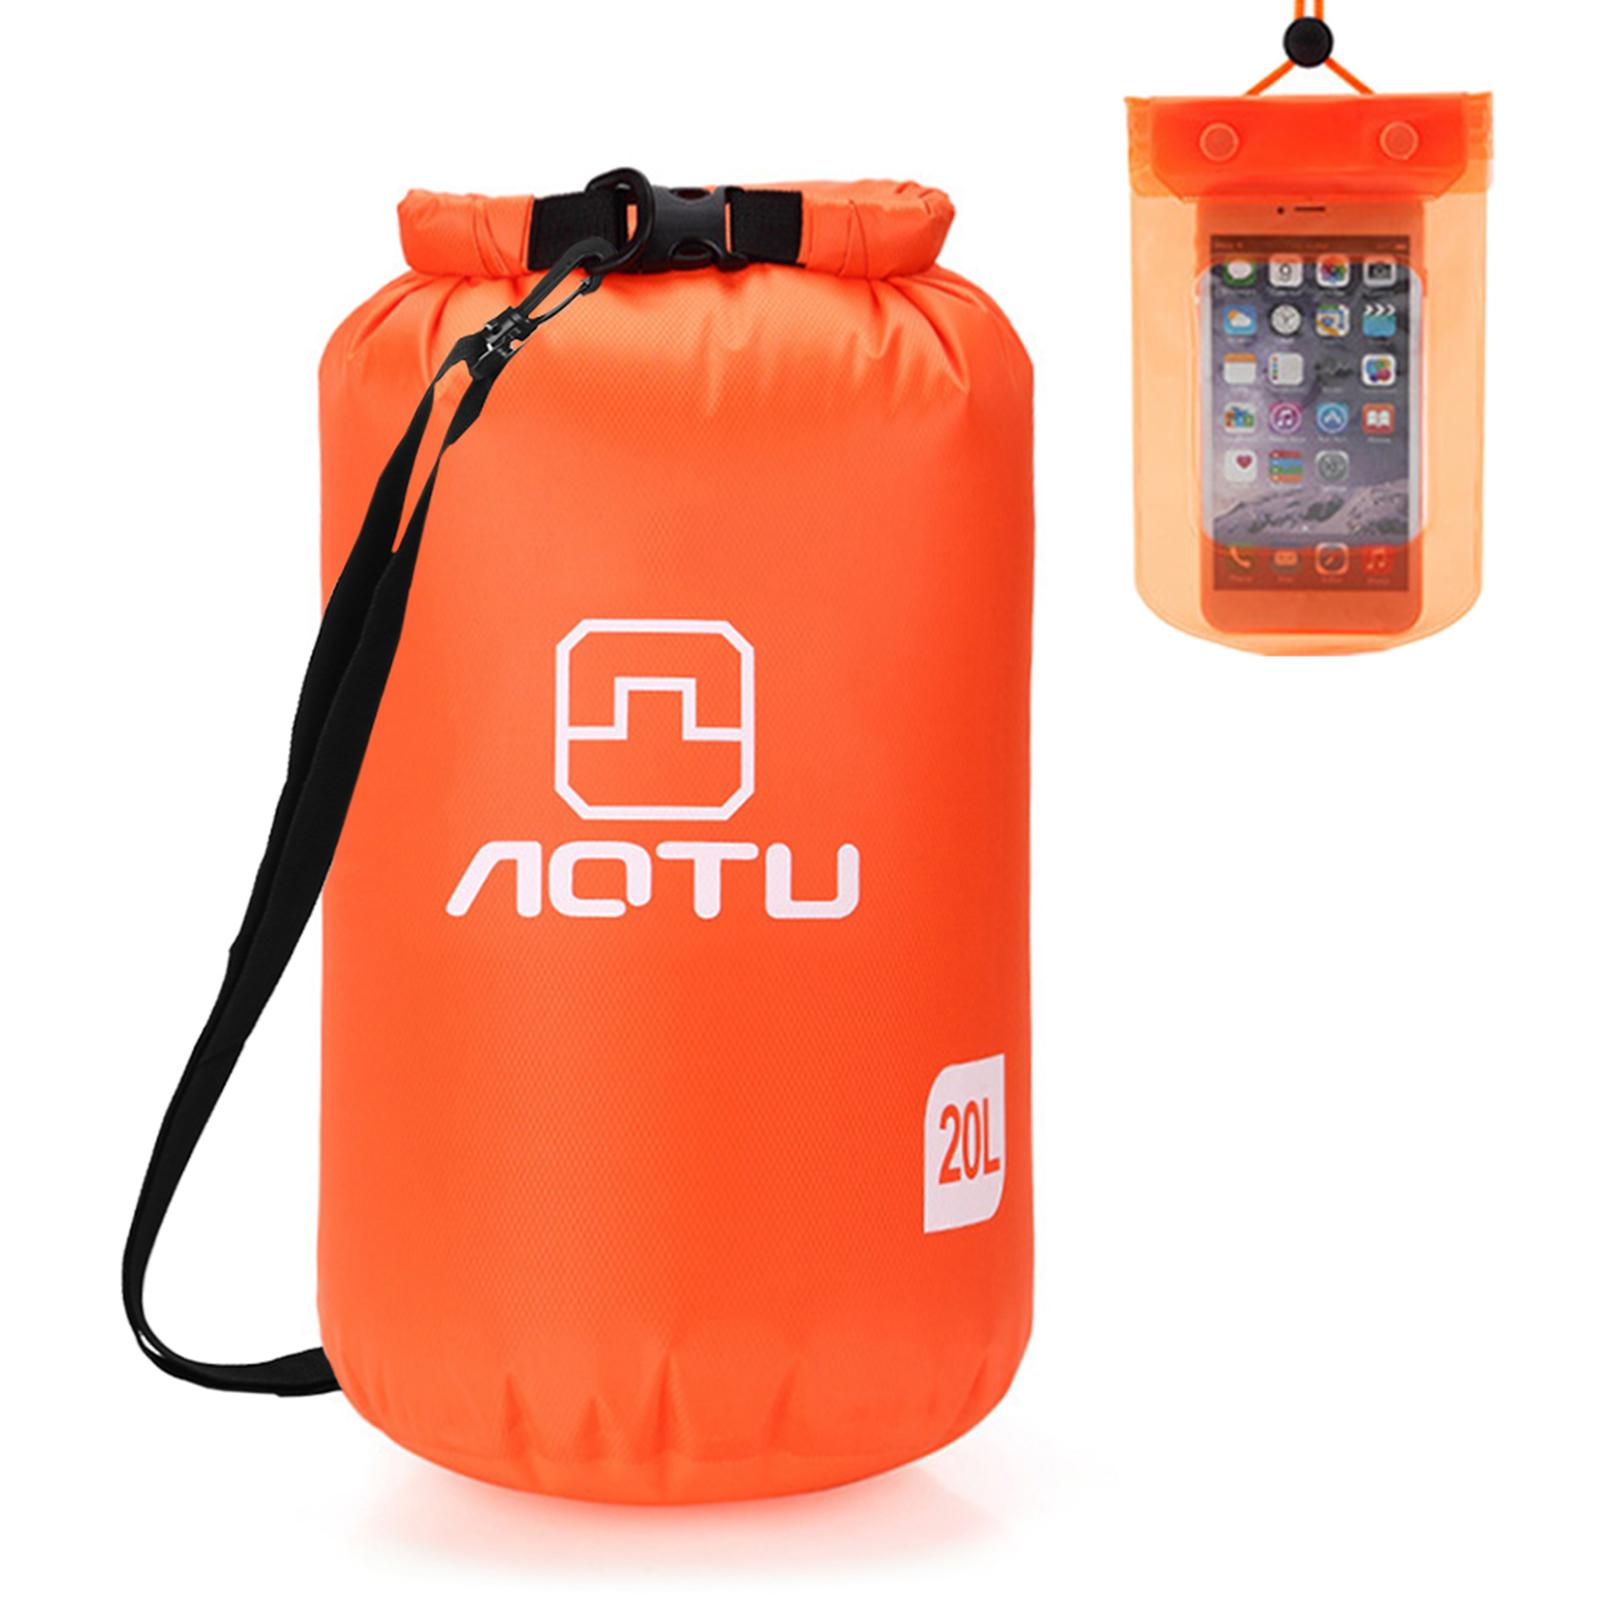 Túi khô chống nước siêu nhẹ dung tích lớn 20L bằng vải polyester cường độ cao kèm vỏ đựng điện thoại bằng PVC